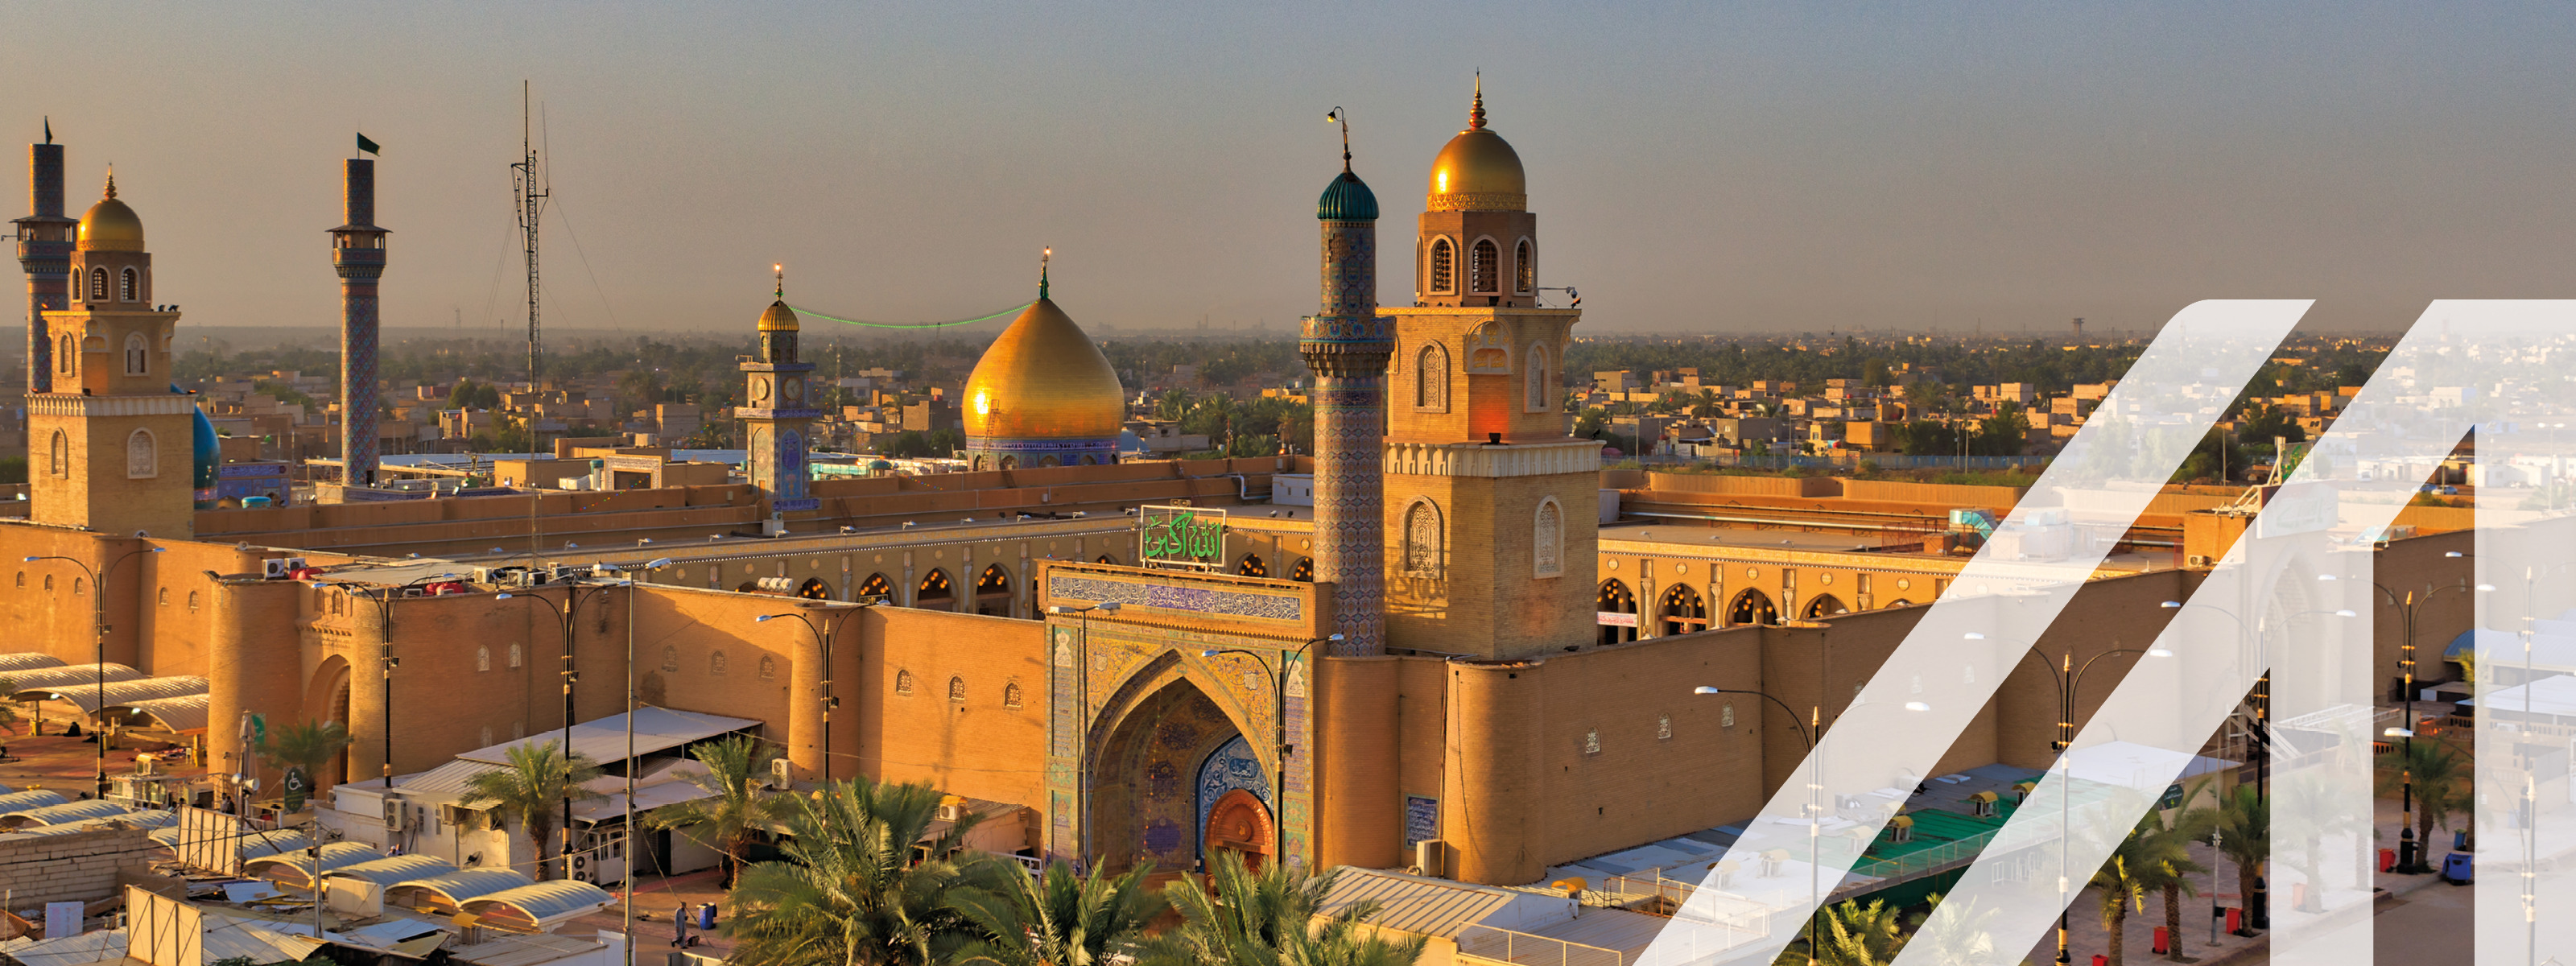 Blick auf die Große Moschee von Kufa, Iran mit Austria A